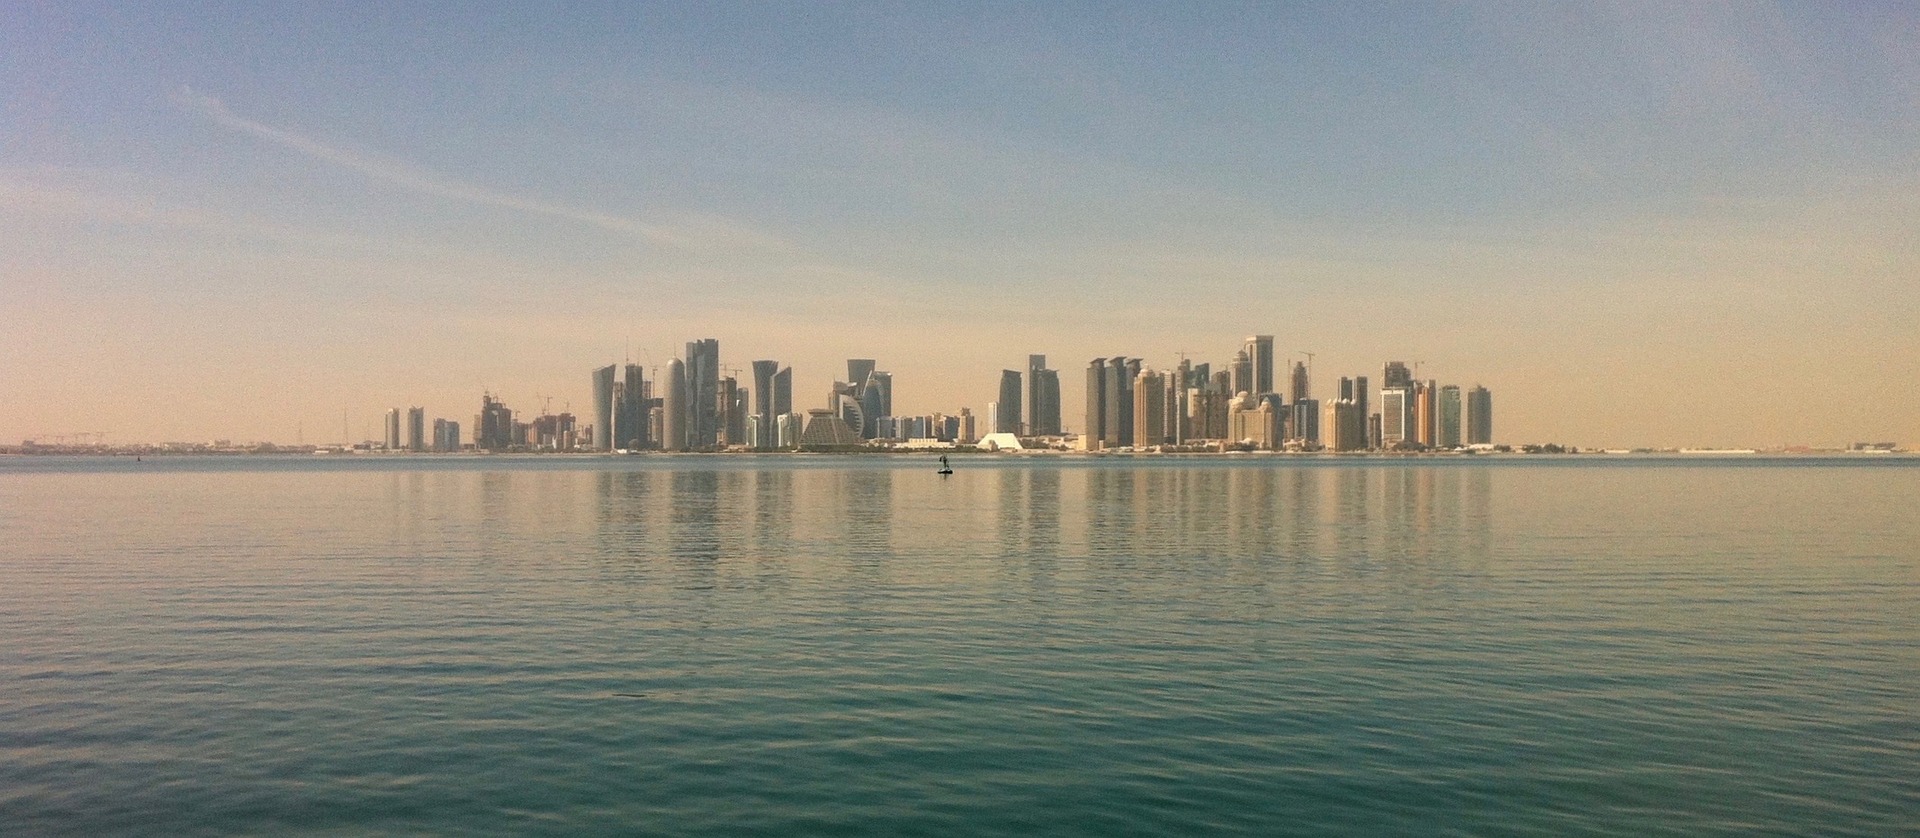 Imagen de Doha, en Qatar, sede del Mundial de Fútbol 2022